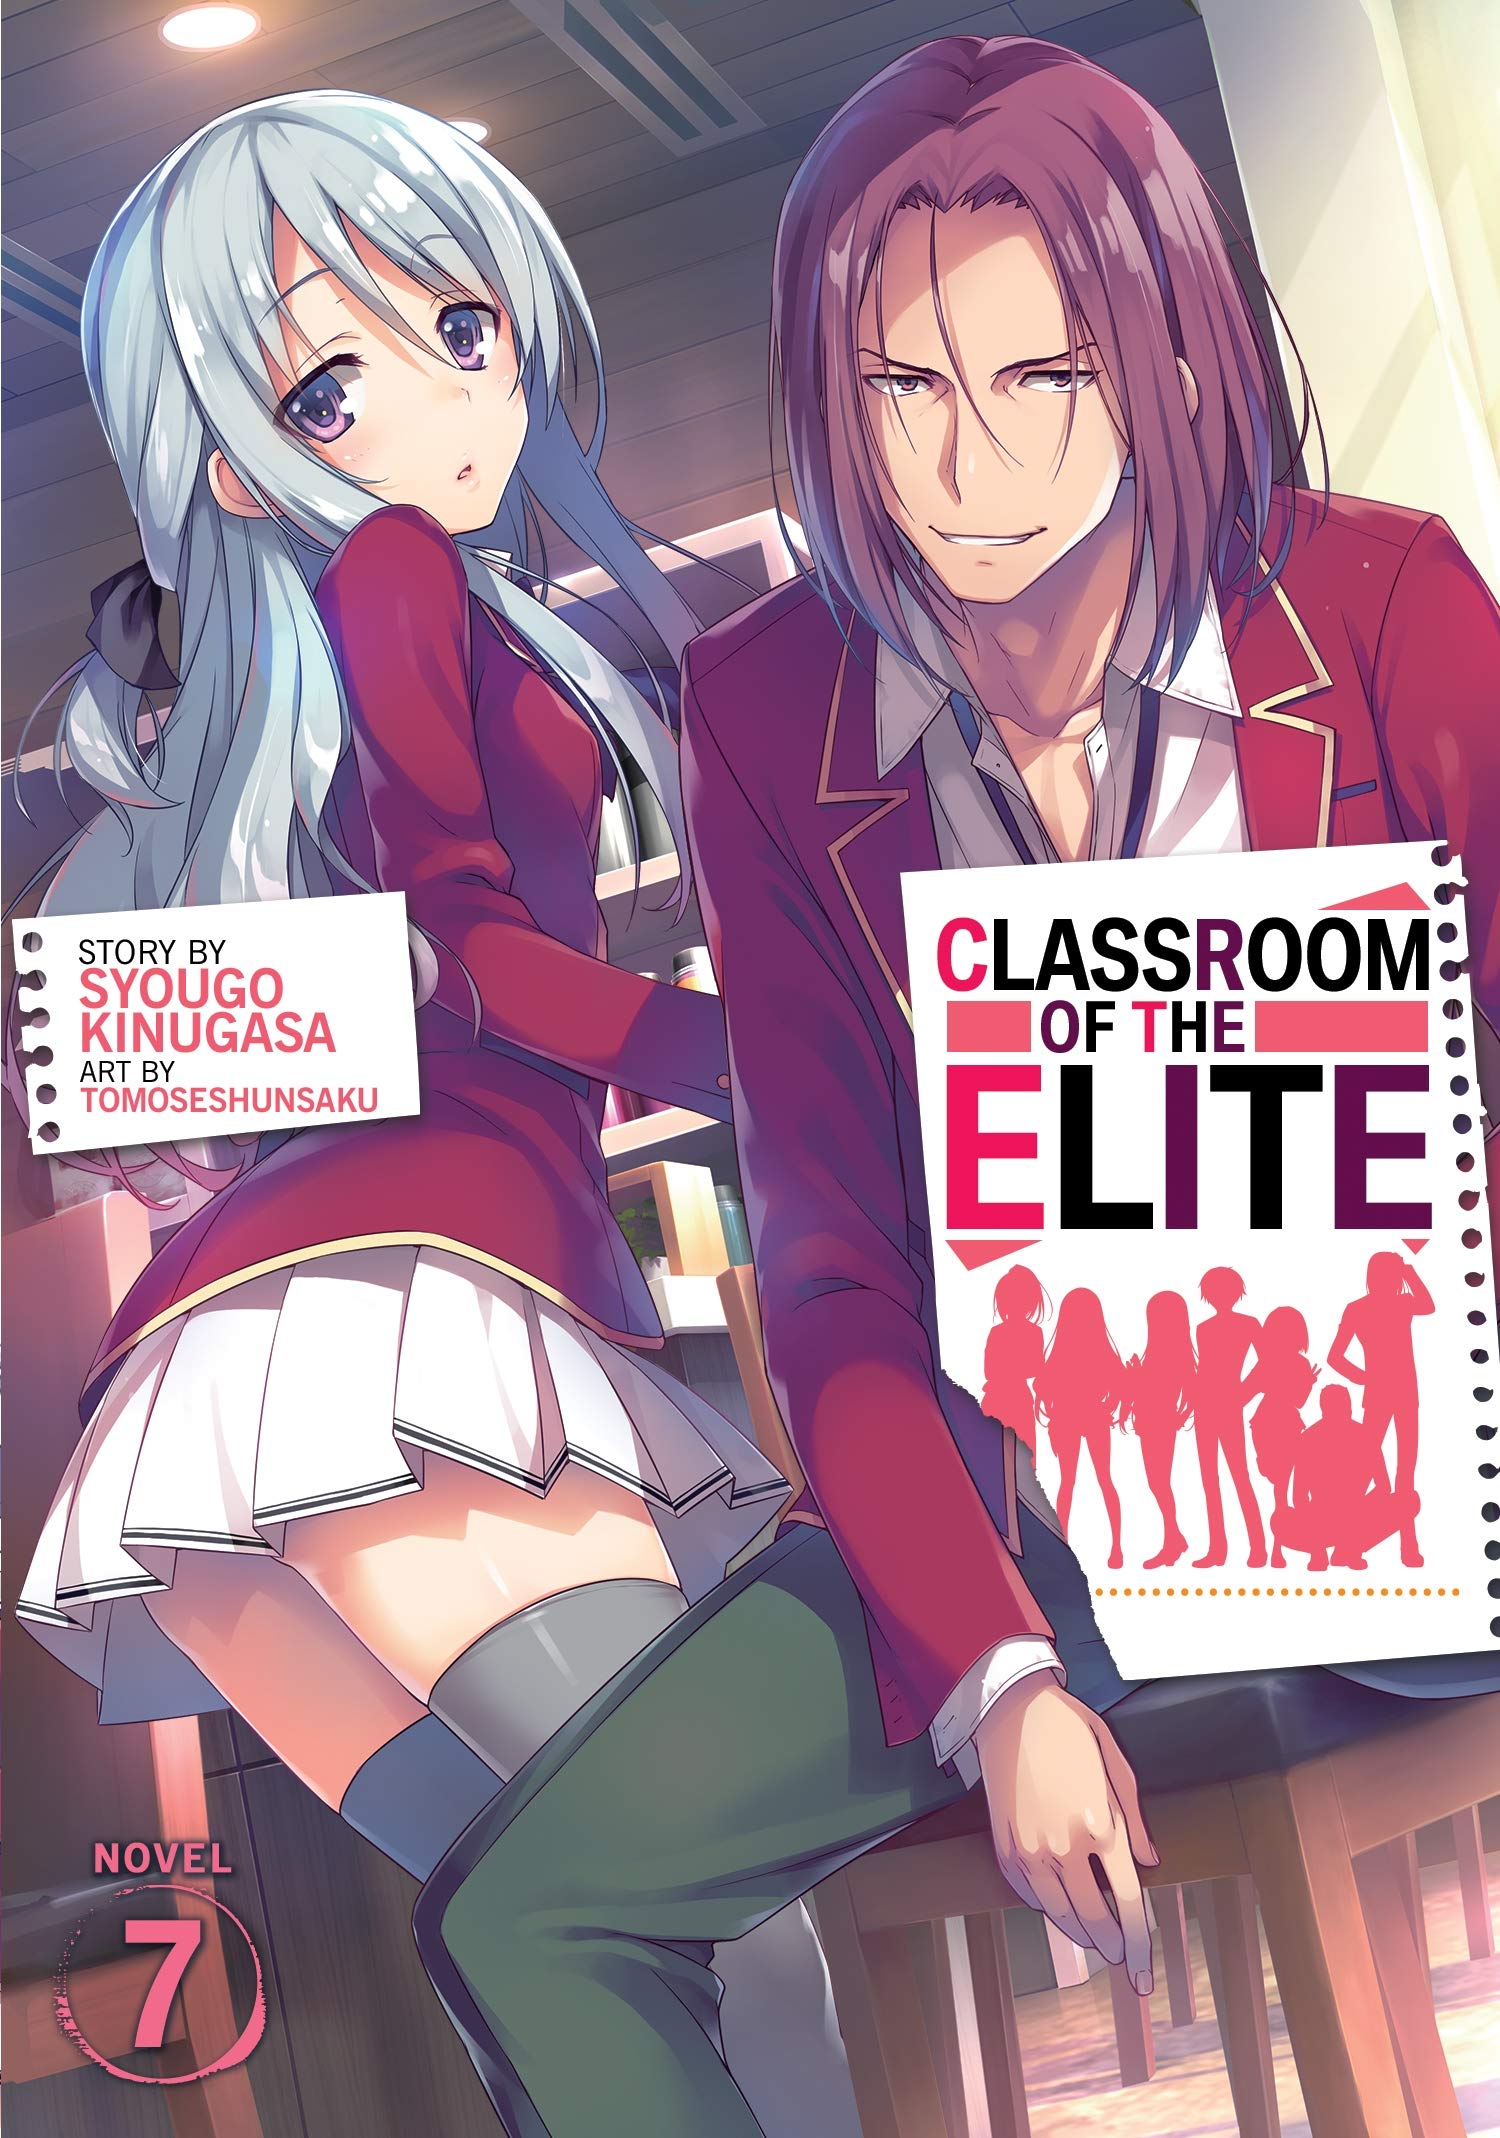 Classroom of the Elite Season 2 Episode 3: ¿fecha y hora de estreno?